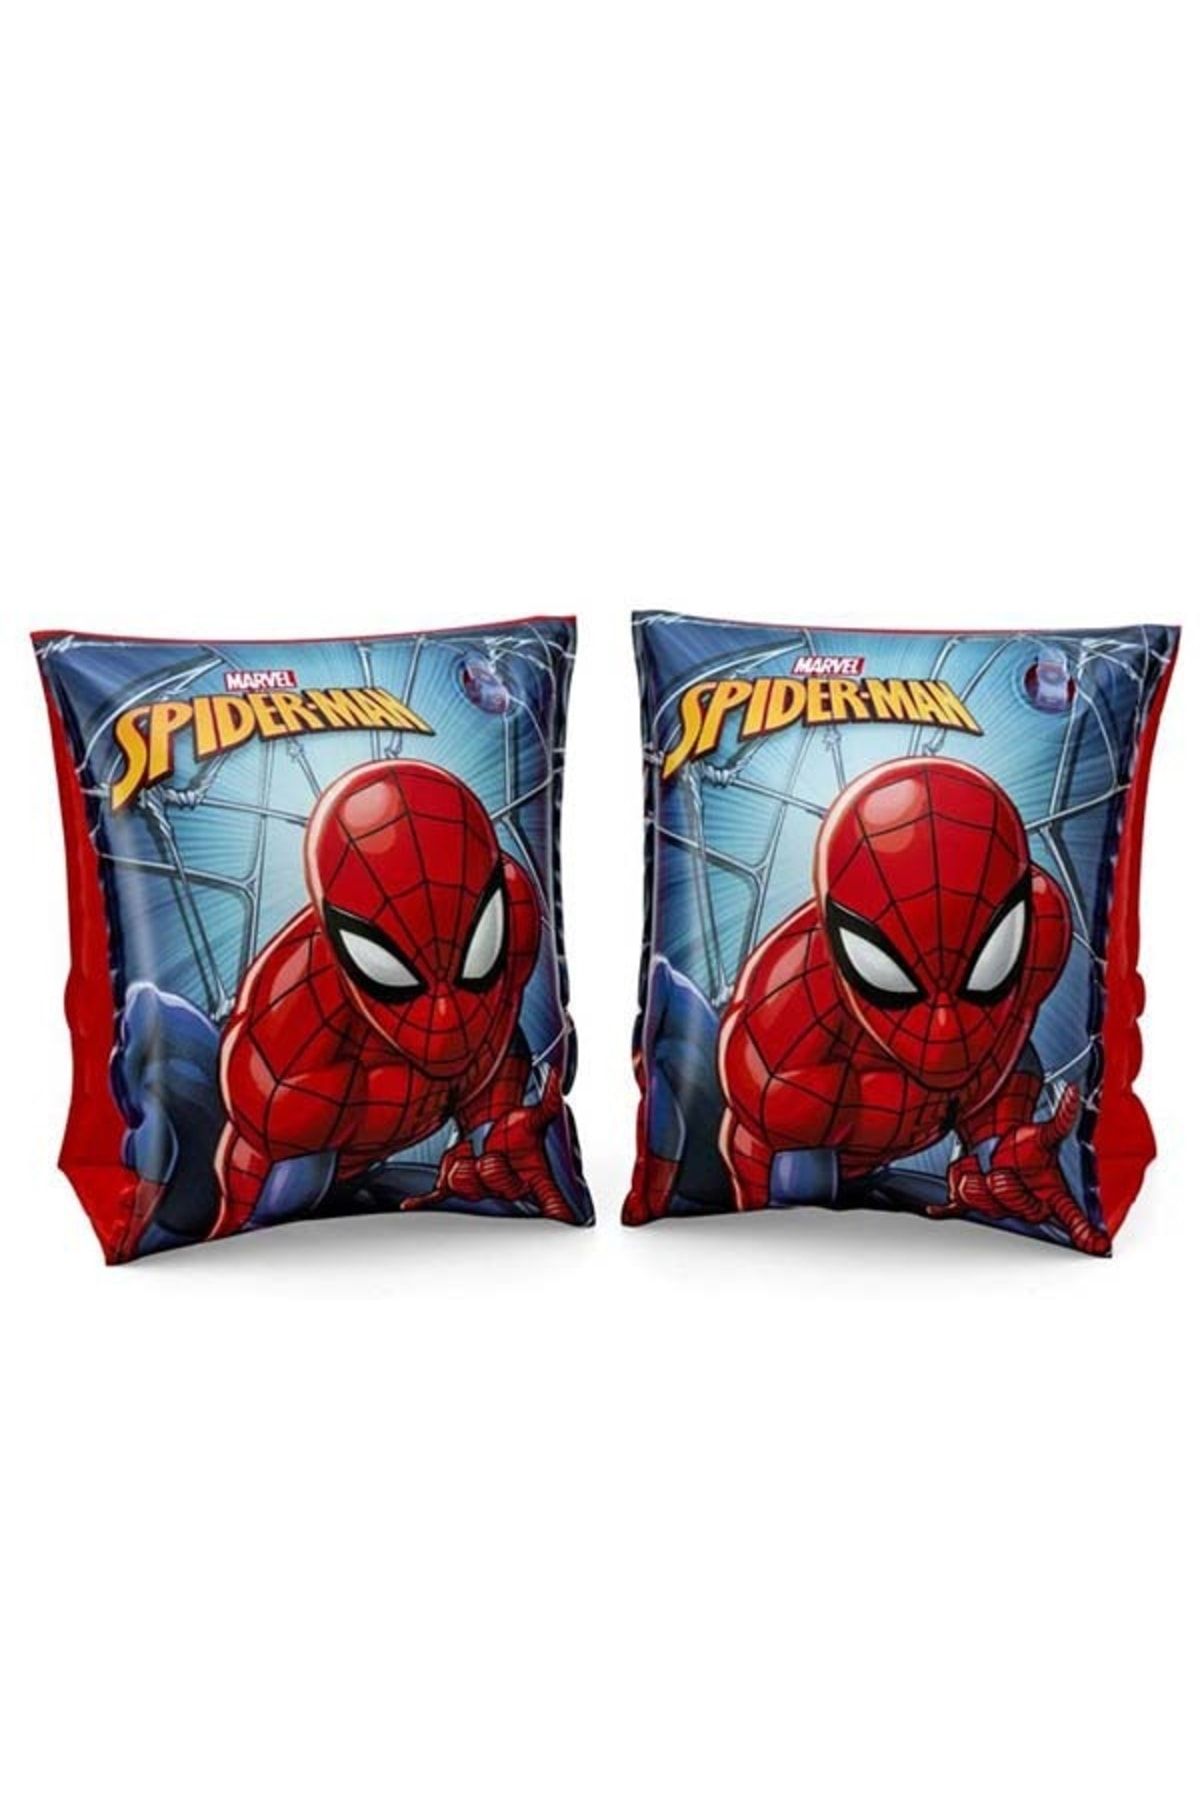 Bestway Spiderman Örümcek Adam Çocuk Kolluk 3-6 Yaş